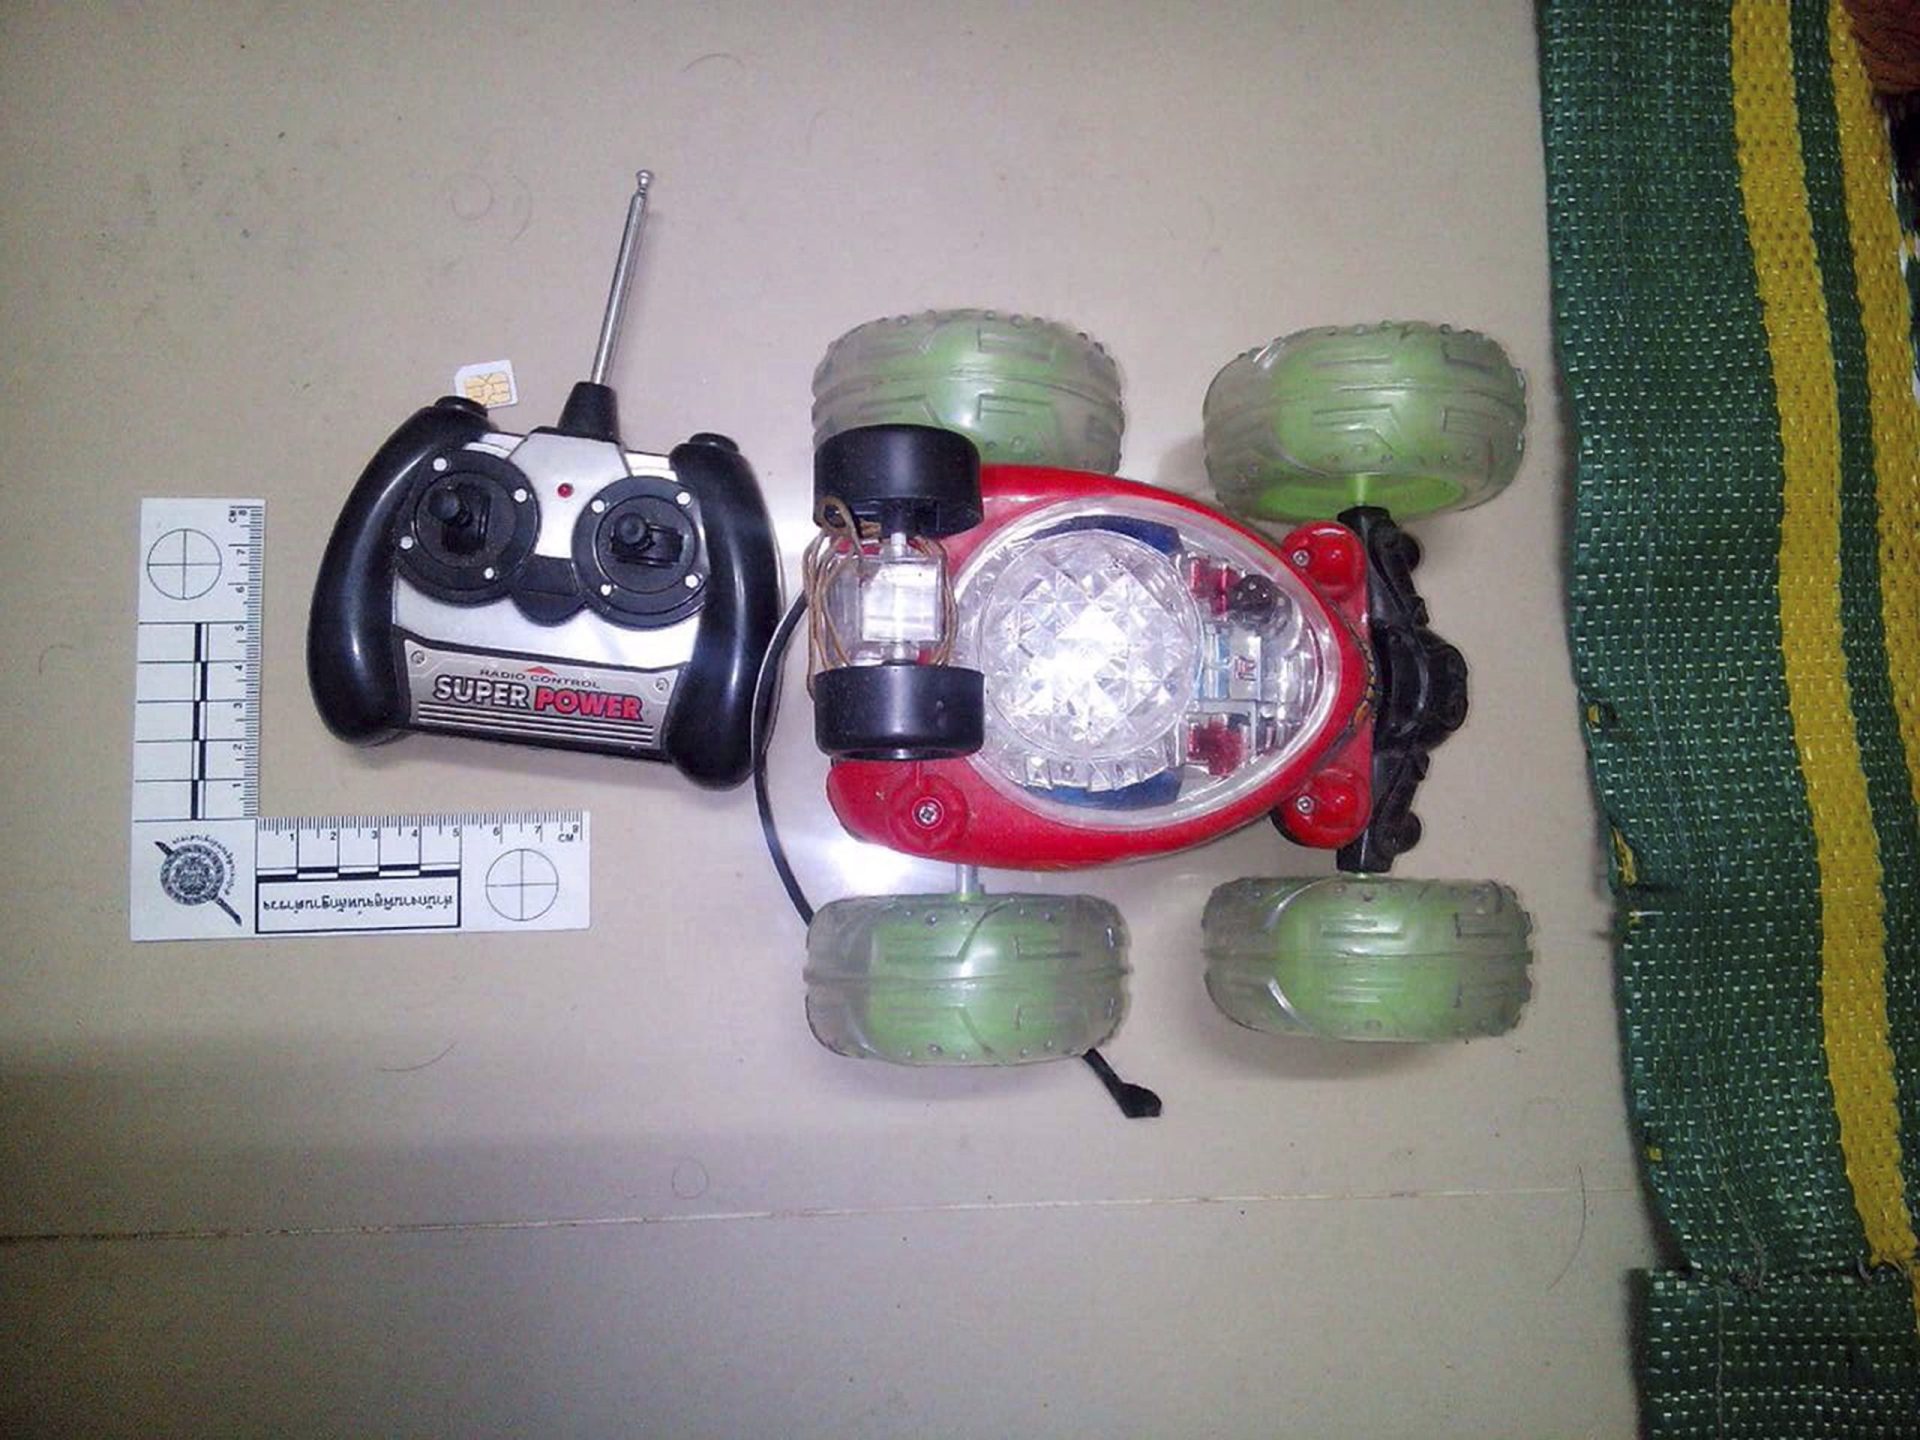 Materiais para fabricar bombas encontrados em apartamento em Banguecoque